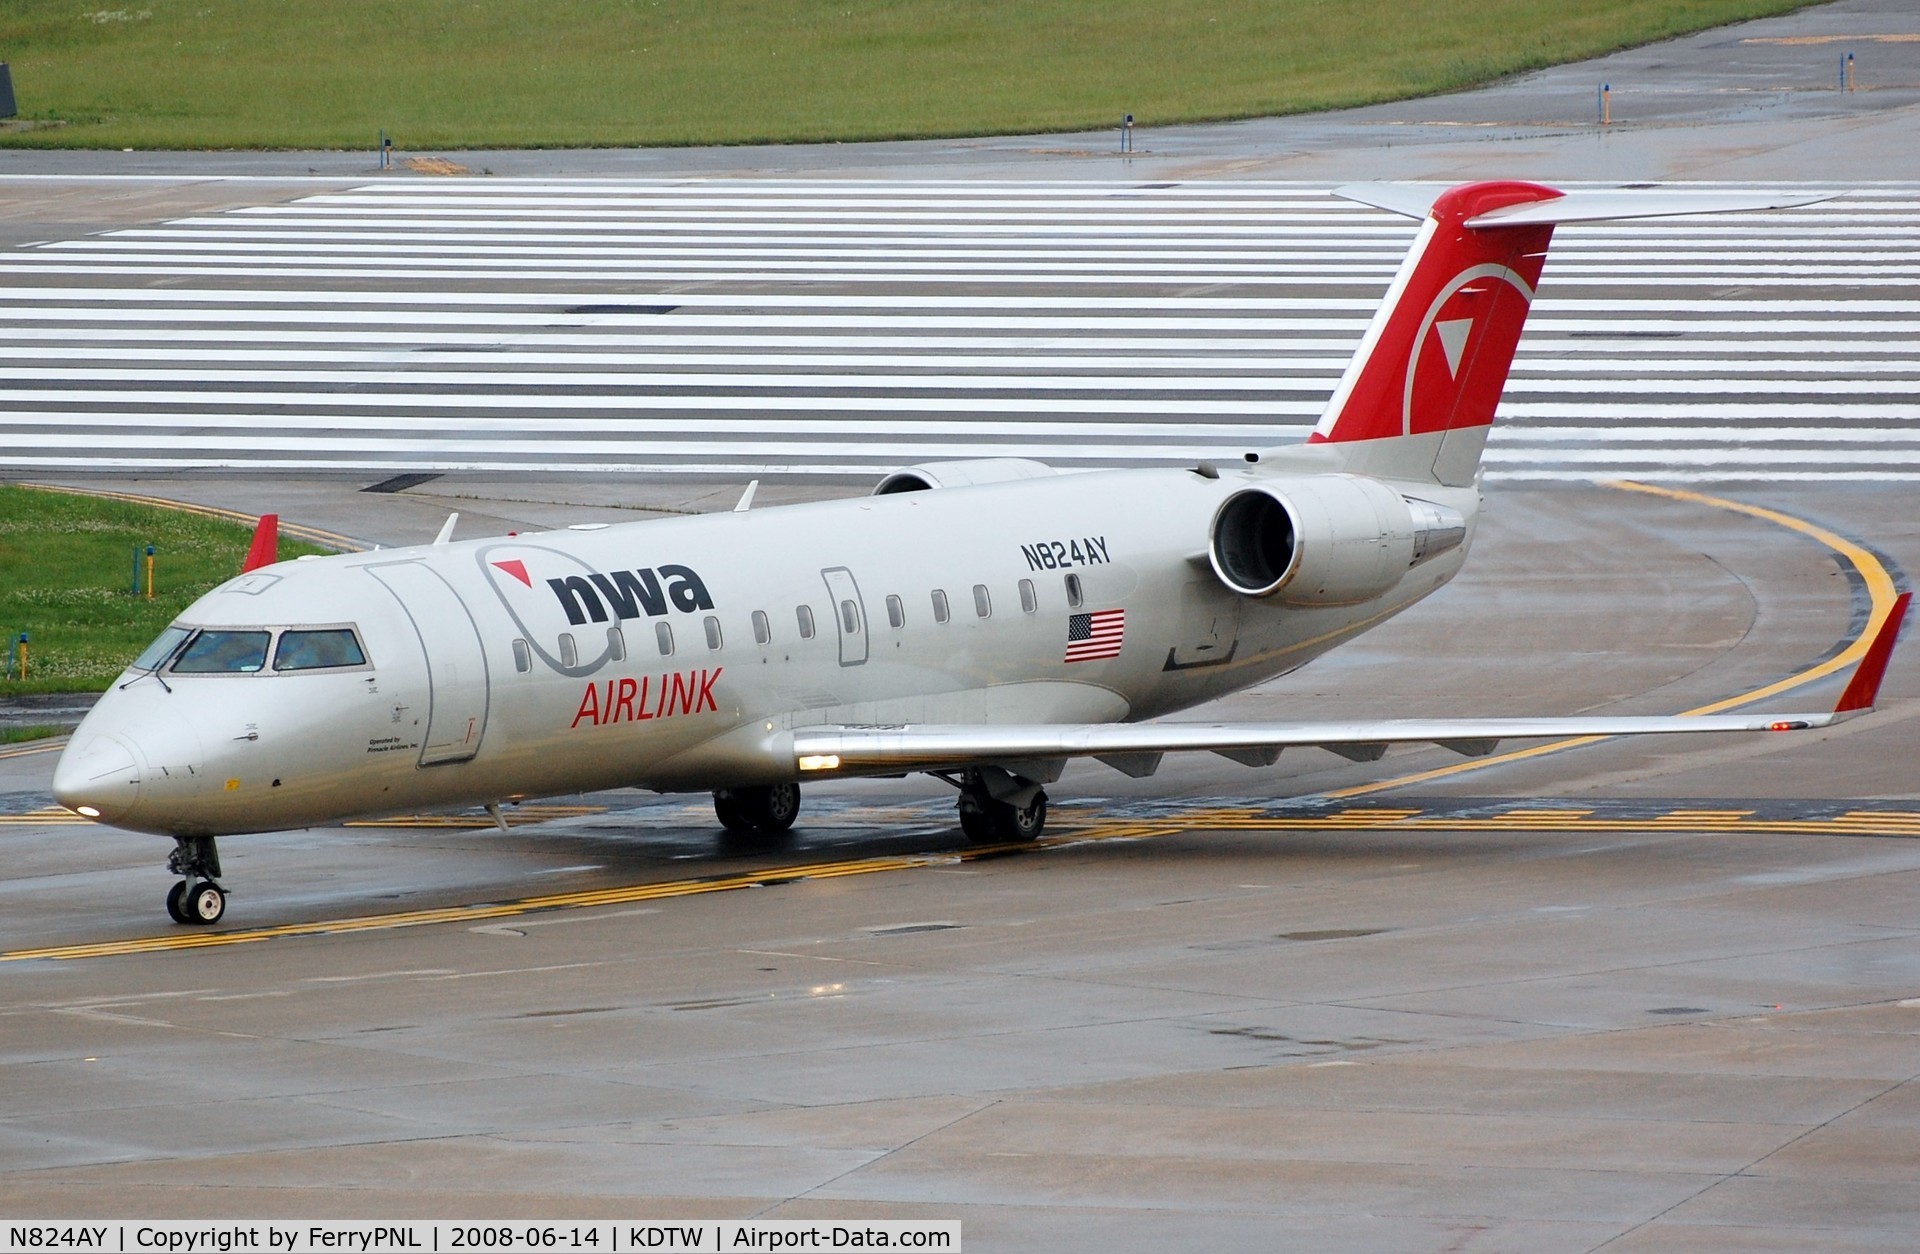 N824AY, 2005 Bombardier CRJ-200LR (CL-600-2B19) C/N 8024, NWA Airlink CL200